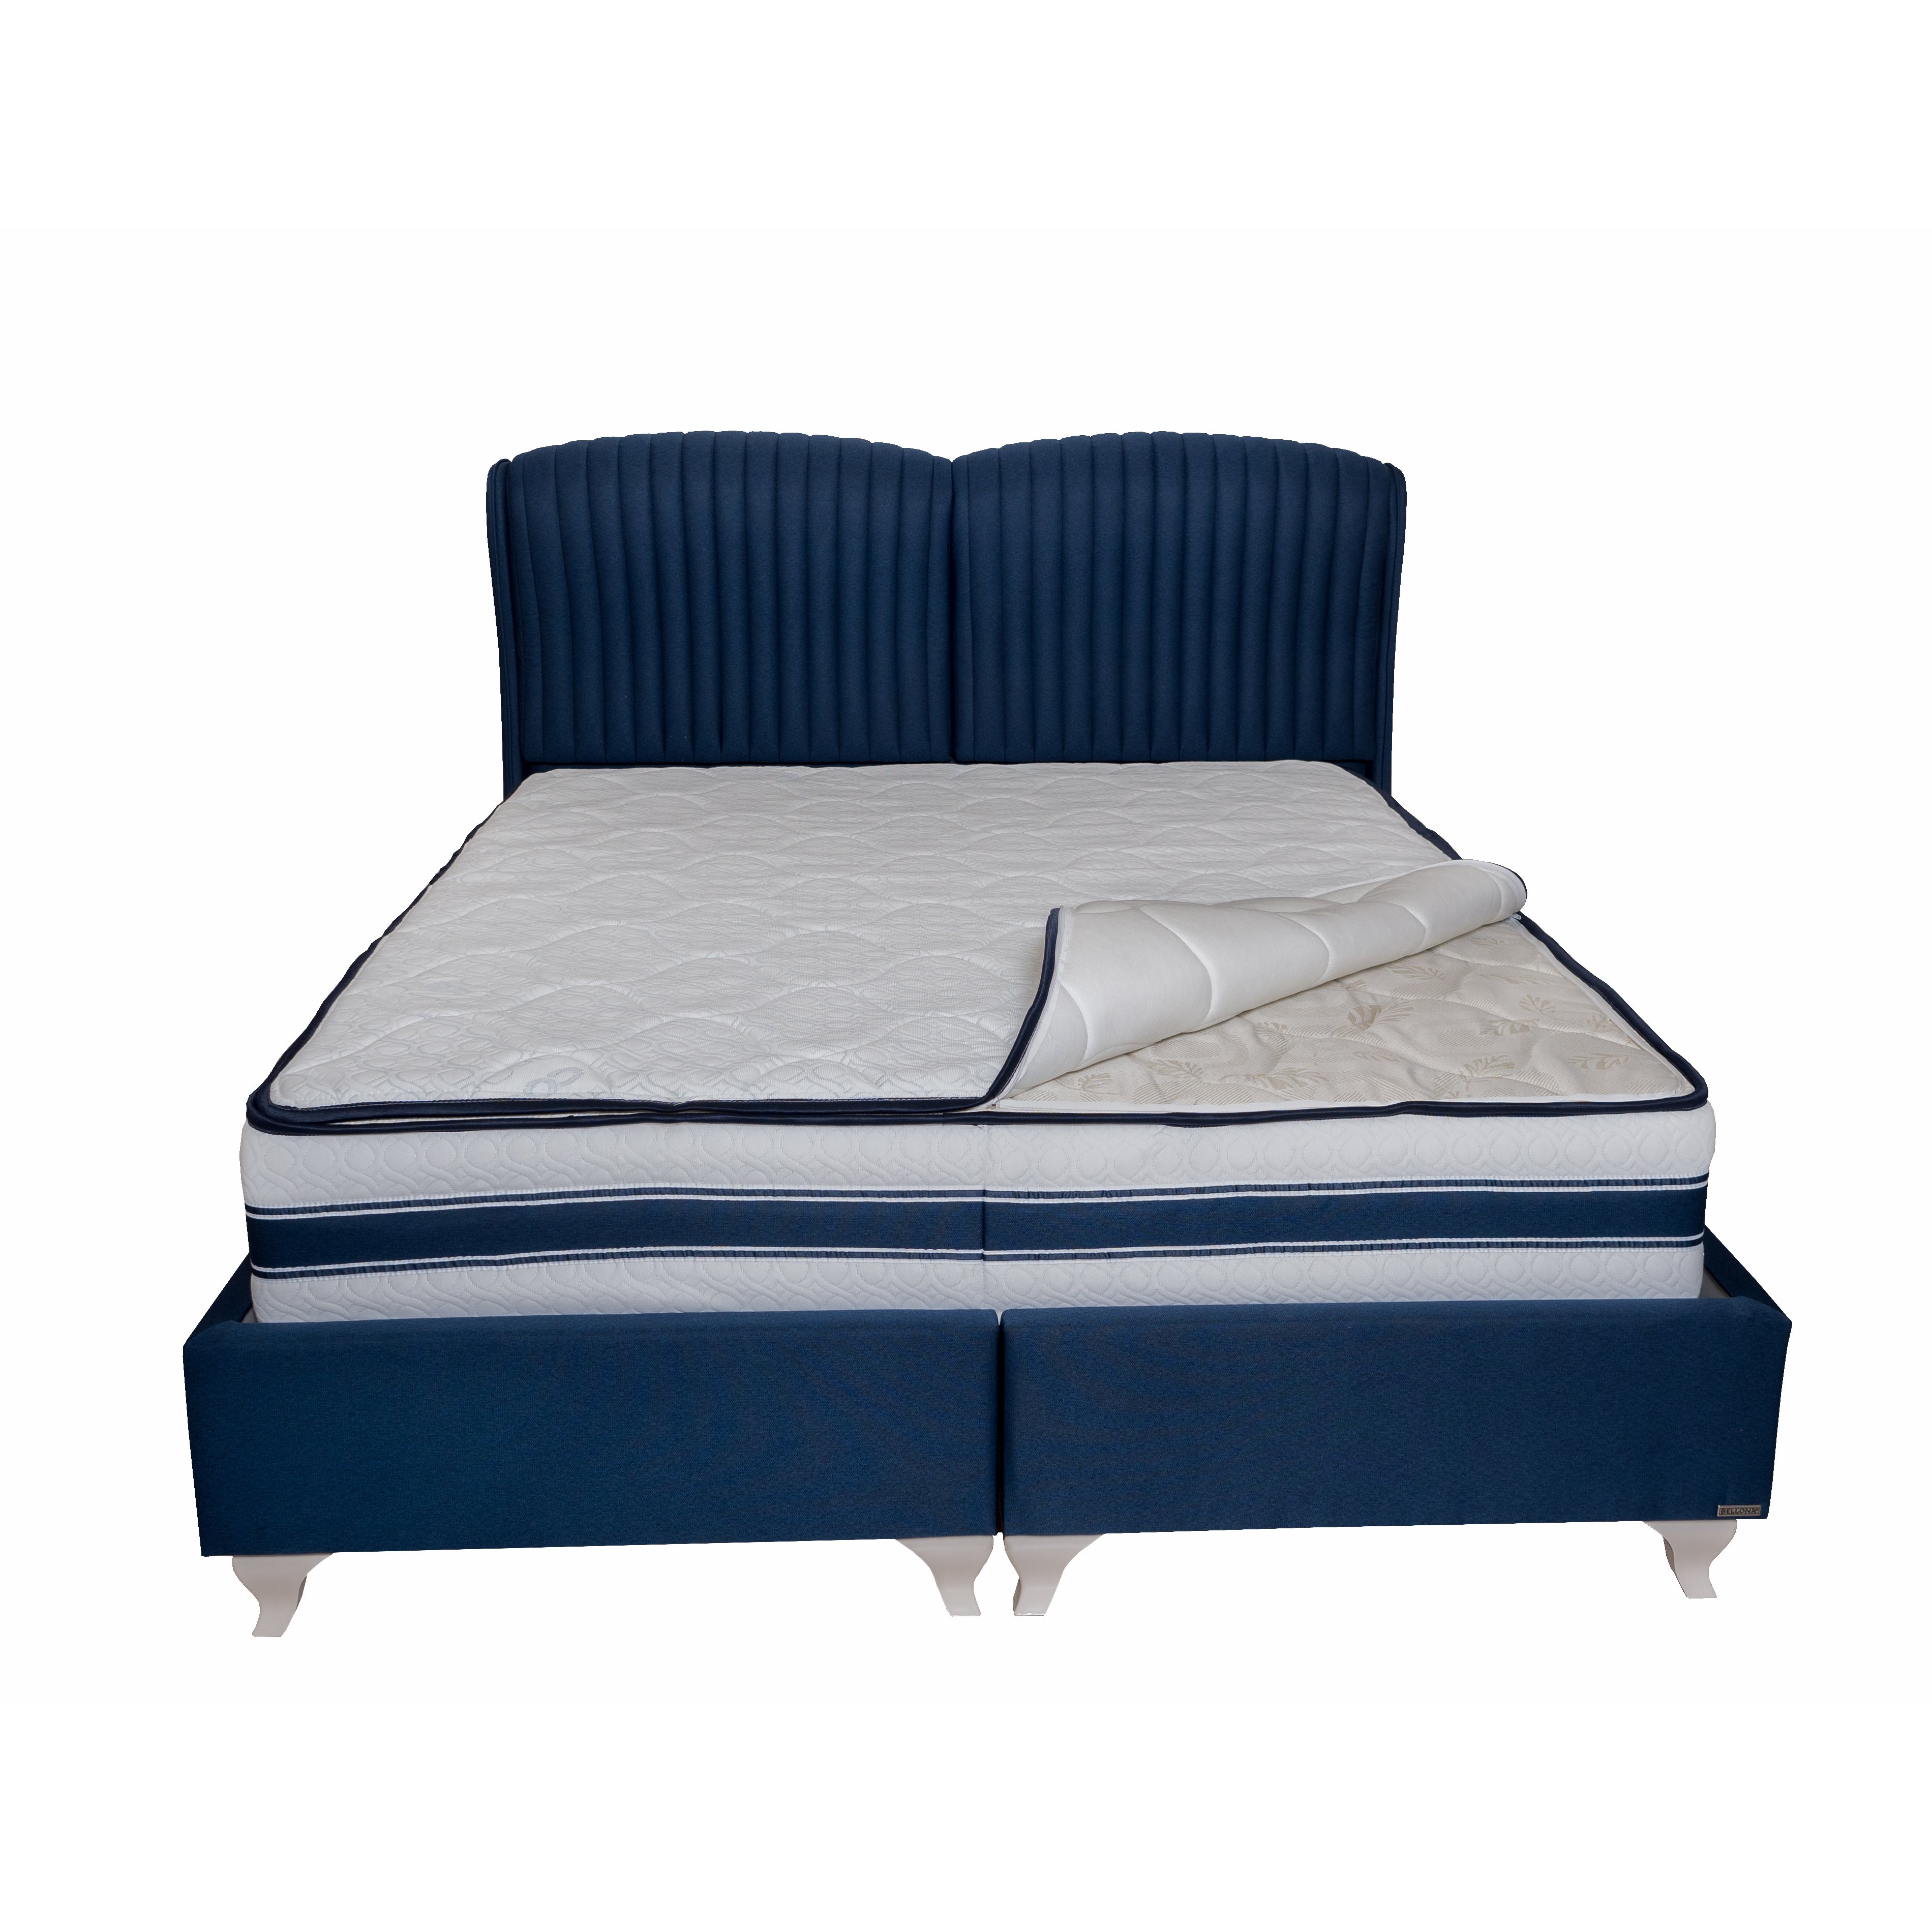 Кровать Bellona Palermo, с мягким изголовьем, с подъемным механизмом, обивка: ткань: B1578PLRM-()+VEGA-()x200